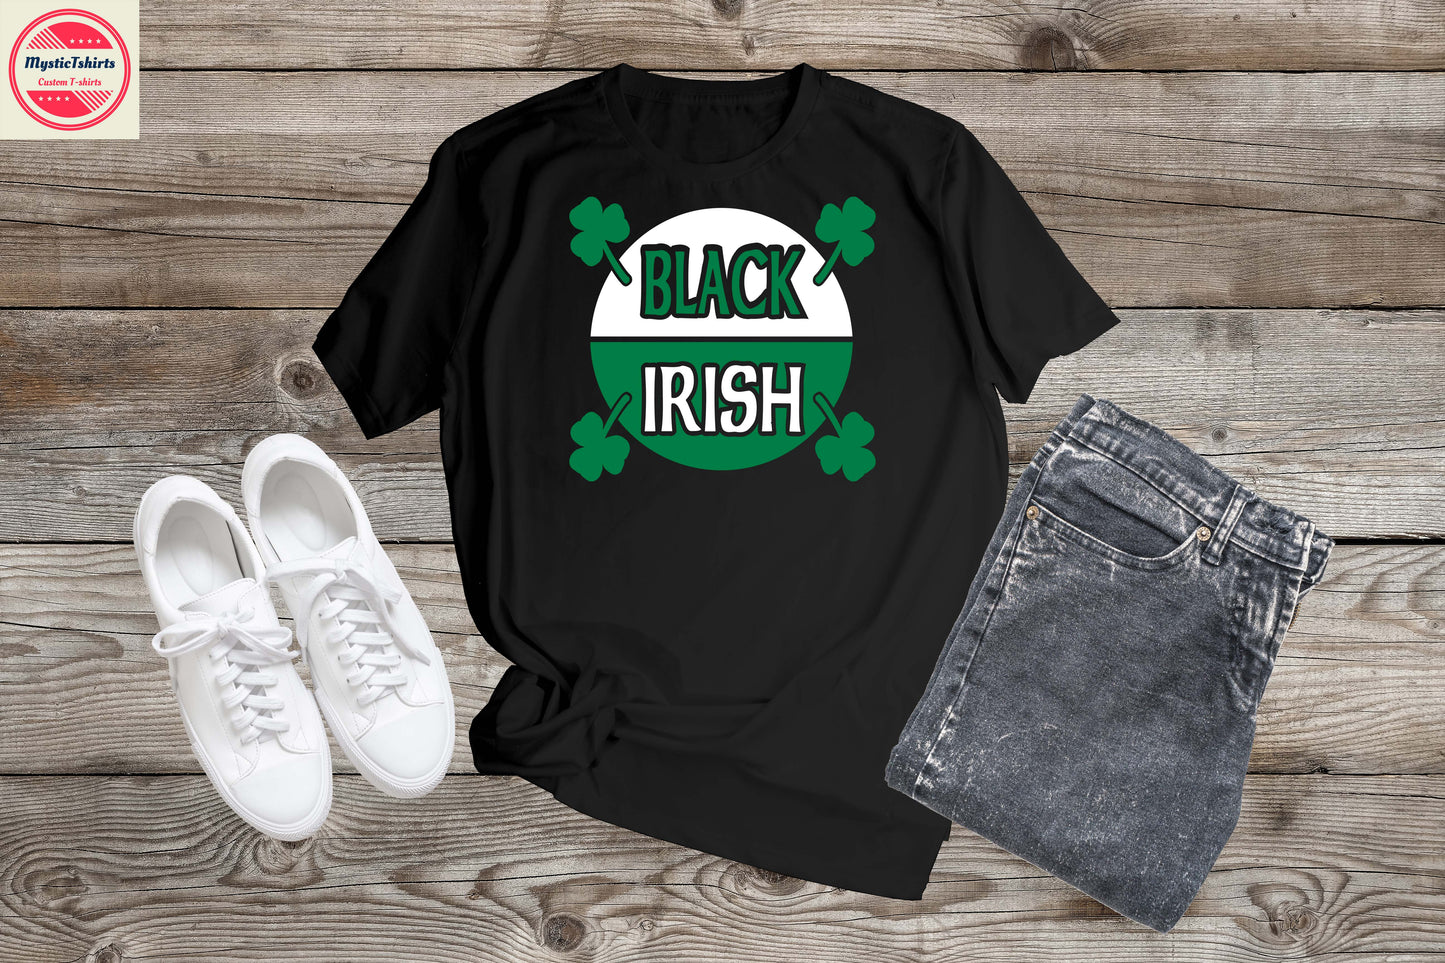 031. BLACK IRISH, Custom Made Shirt, Personalized T-Shirt, Custom Text, Make Your Own Shirt, Custom Tee